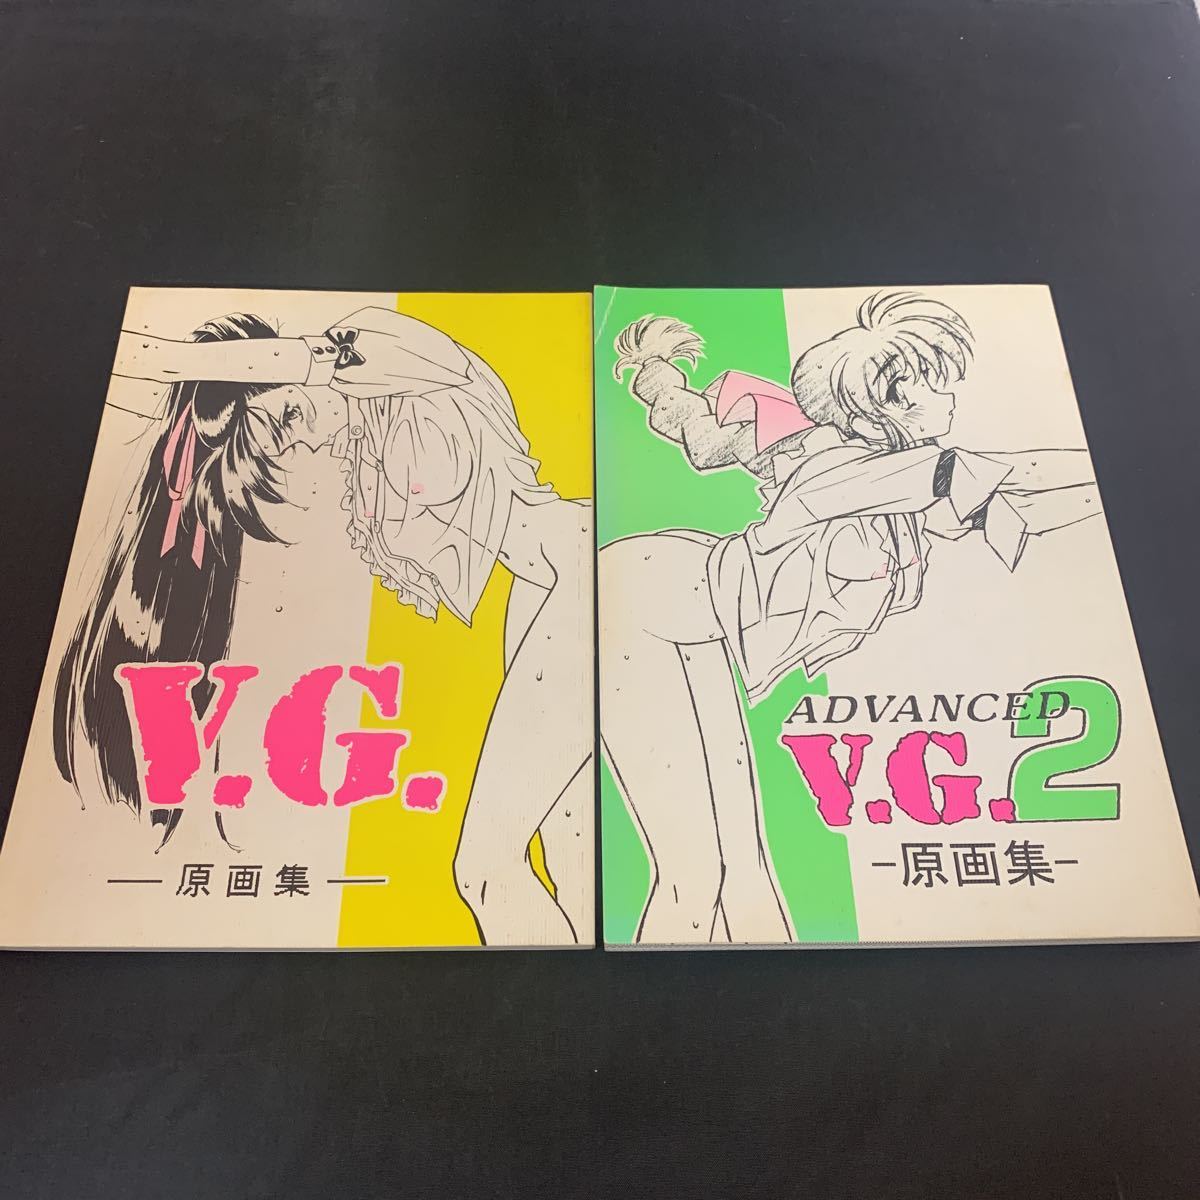 木村貴宏★ゲーム原画集★ 『V.G.原画集』『ADVANCED V.G.2原画集』U.G.E コネクション 2冊